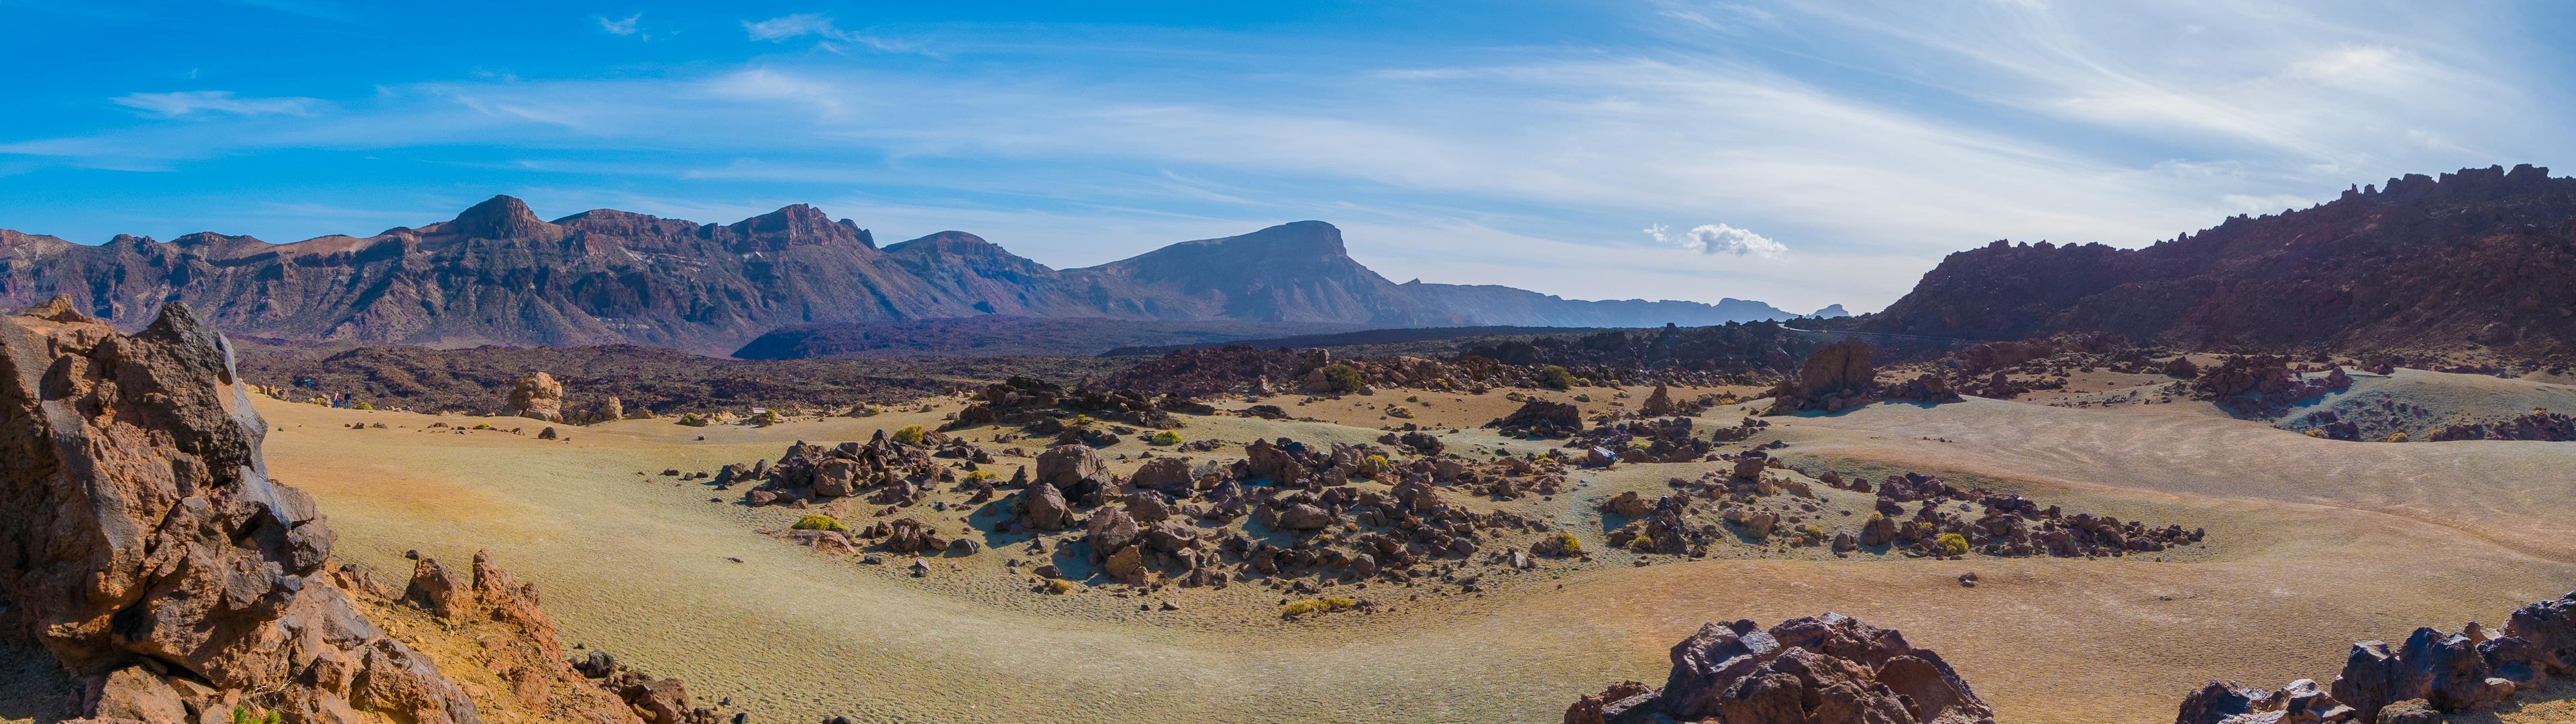 Teide National Park, Travels, Spain, Landscape, 3840x1080 Dual Screen Desktop